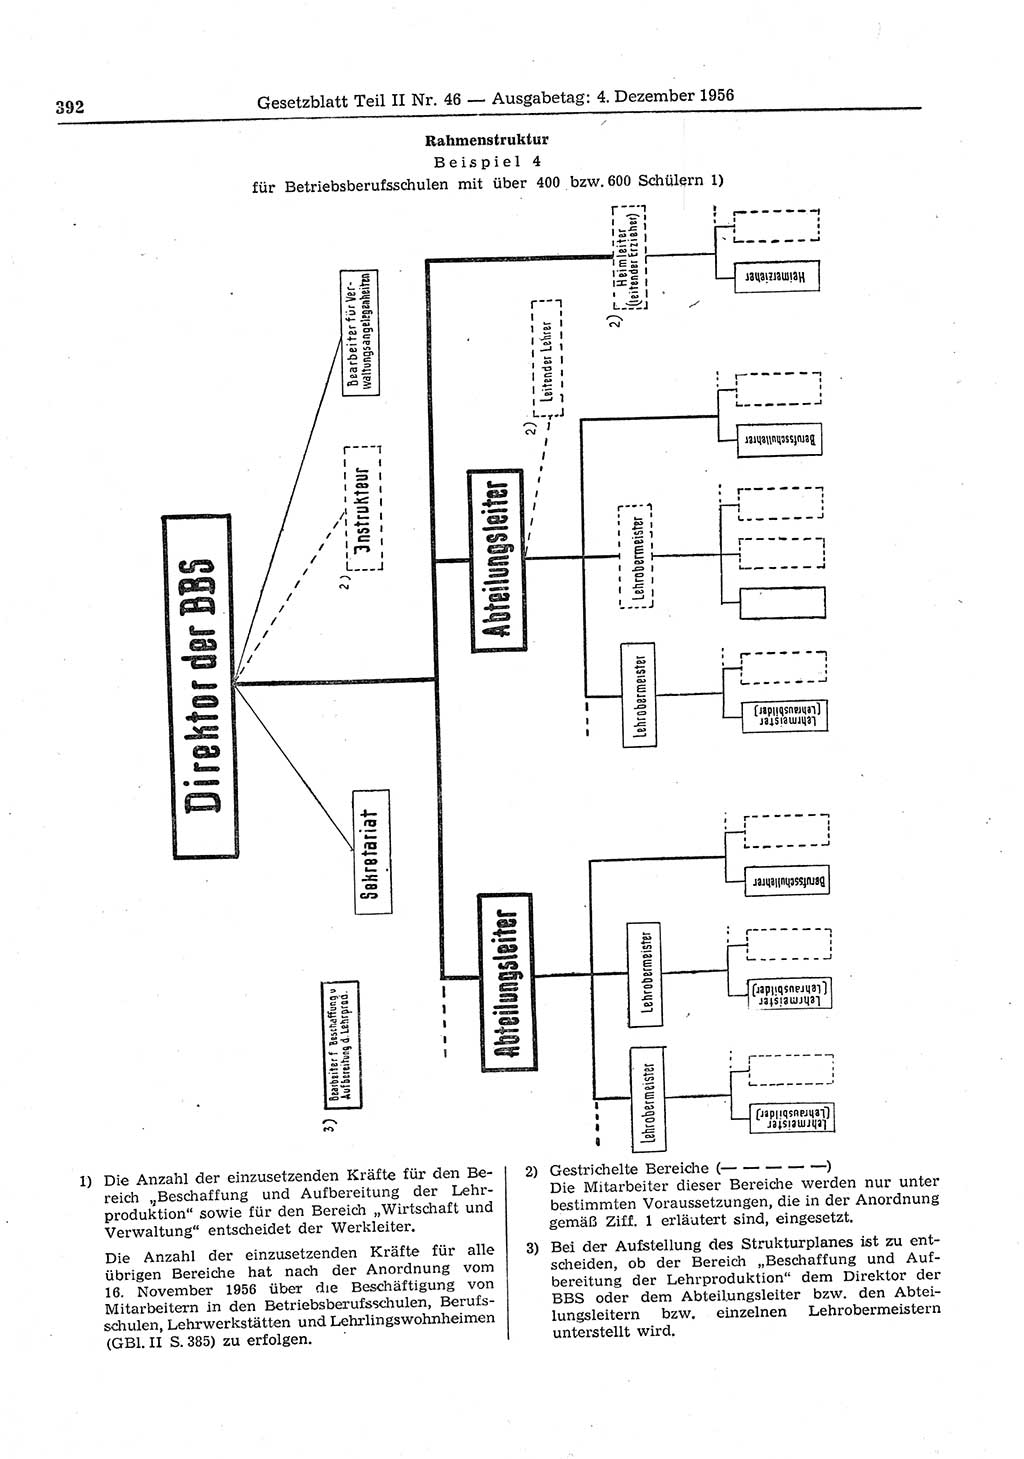 Gesetzblatt (GBl.) der Deutschen Demokratischen Republik (DDR) Teil ⅠⅠ 1956, Seite 392 (GBl. DDR ⅠⅠ 1956, S. 392)